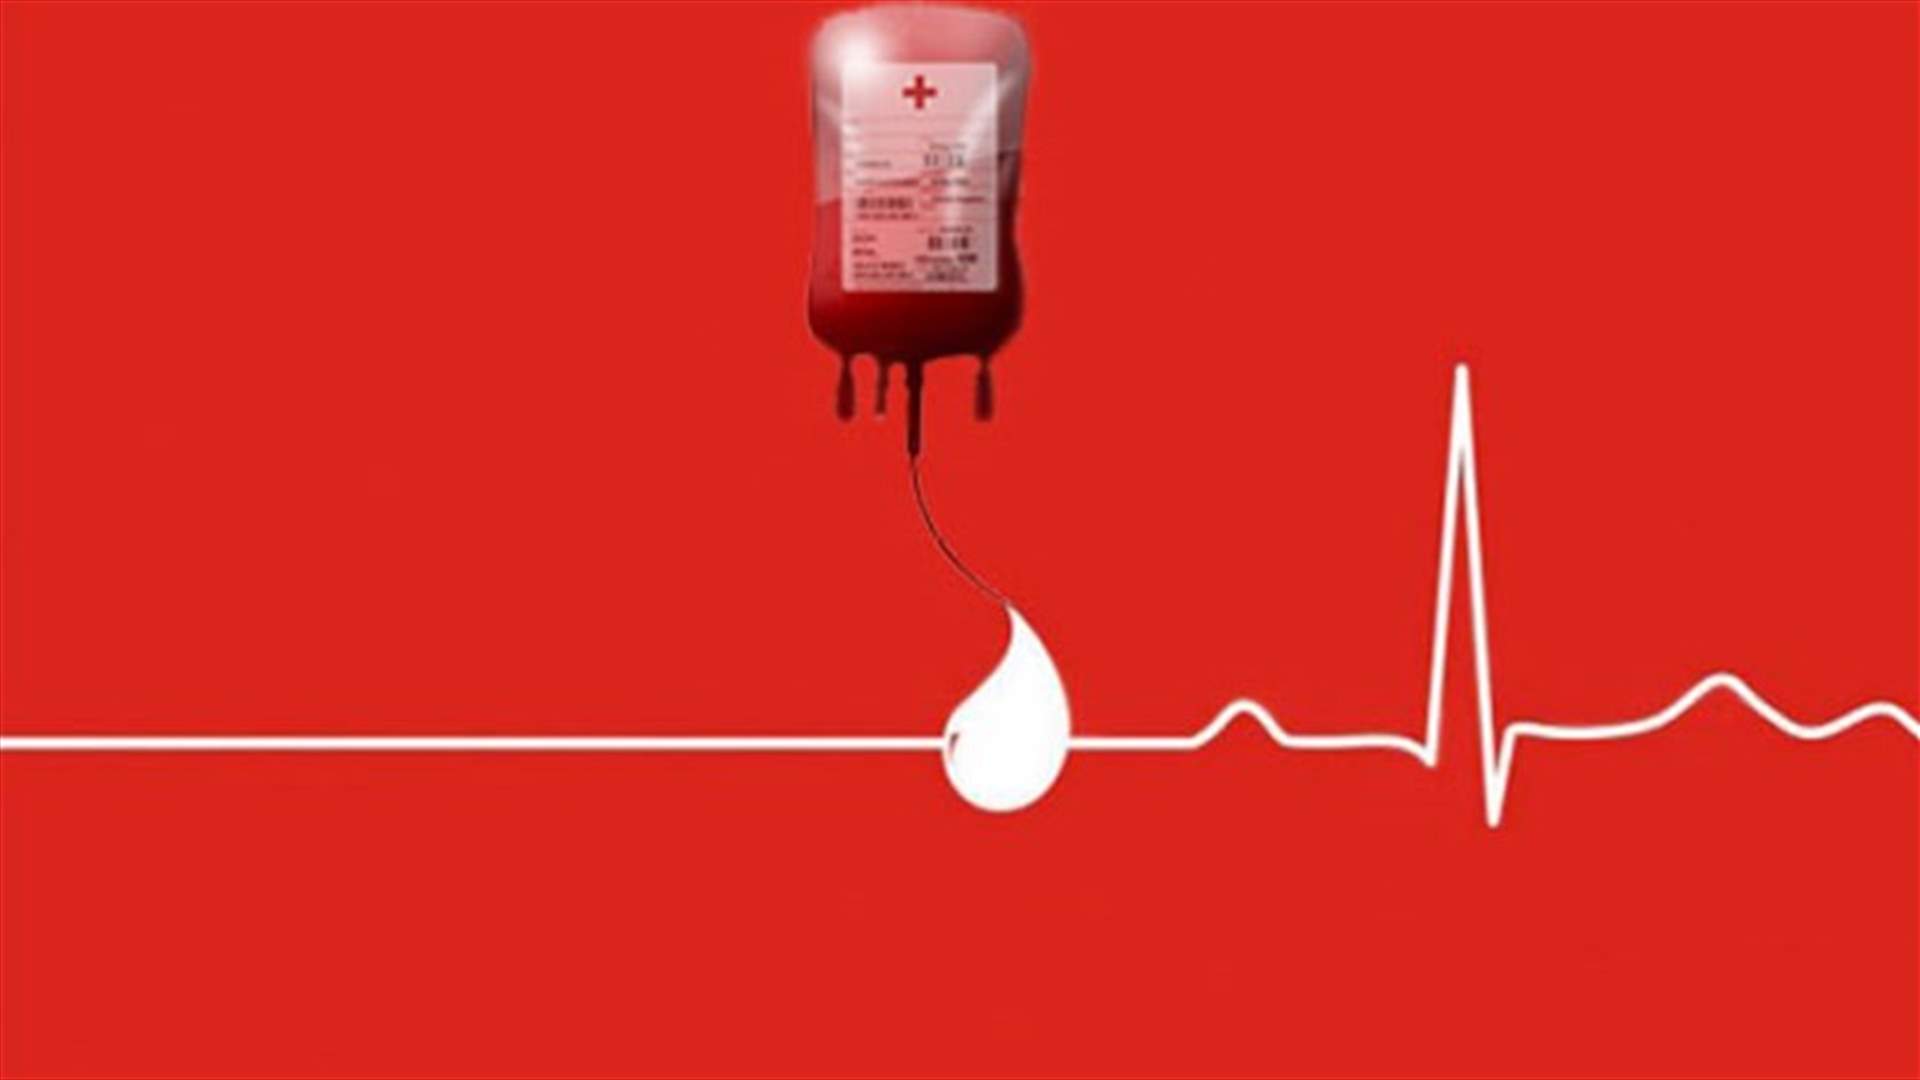 مريضة في مستشفى رزق بحاجة ماسة لبلاكيت دم من كل الفئات - للتبرع الاتصال على الرقم 71957599